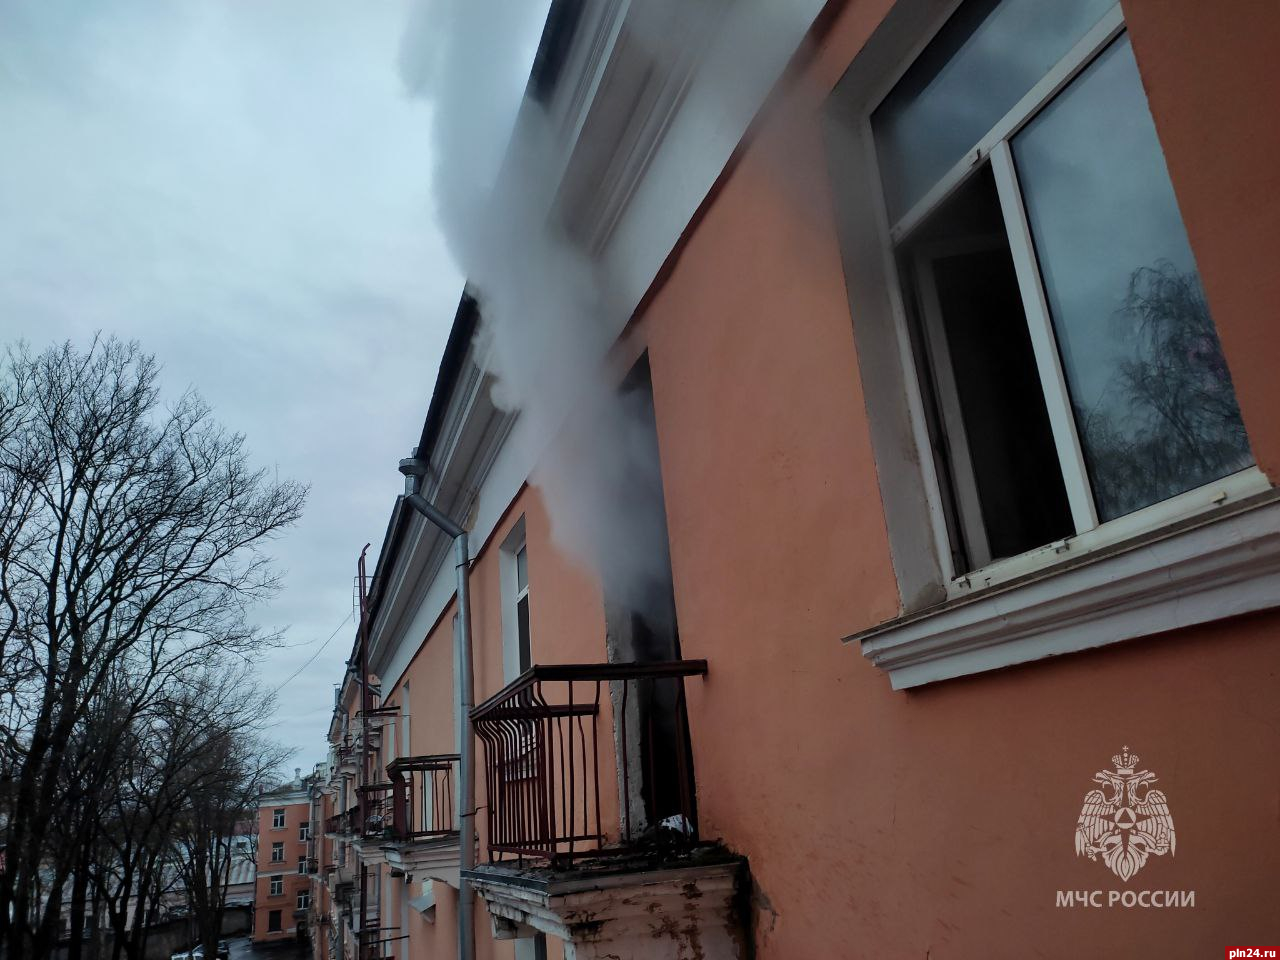 Один человек пострадал при пожаре в многоэтажке в центре Пскова